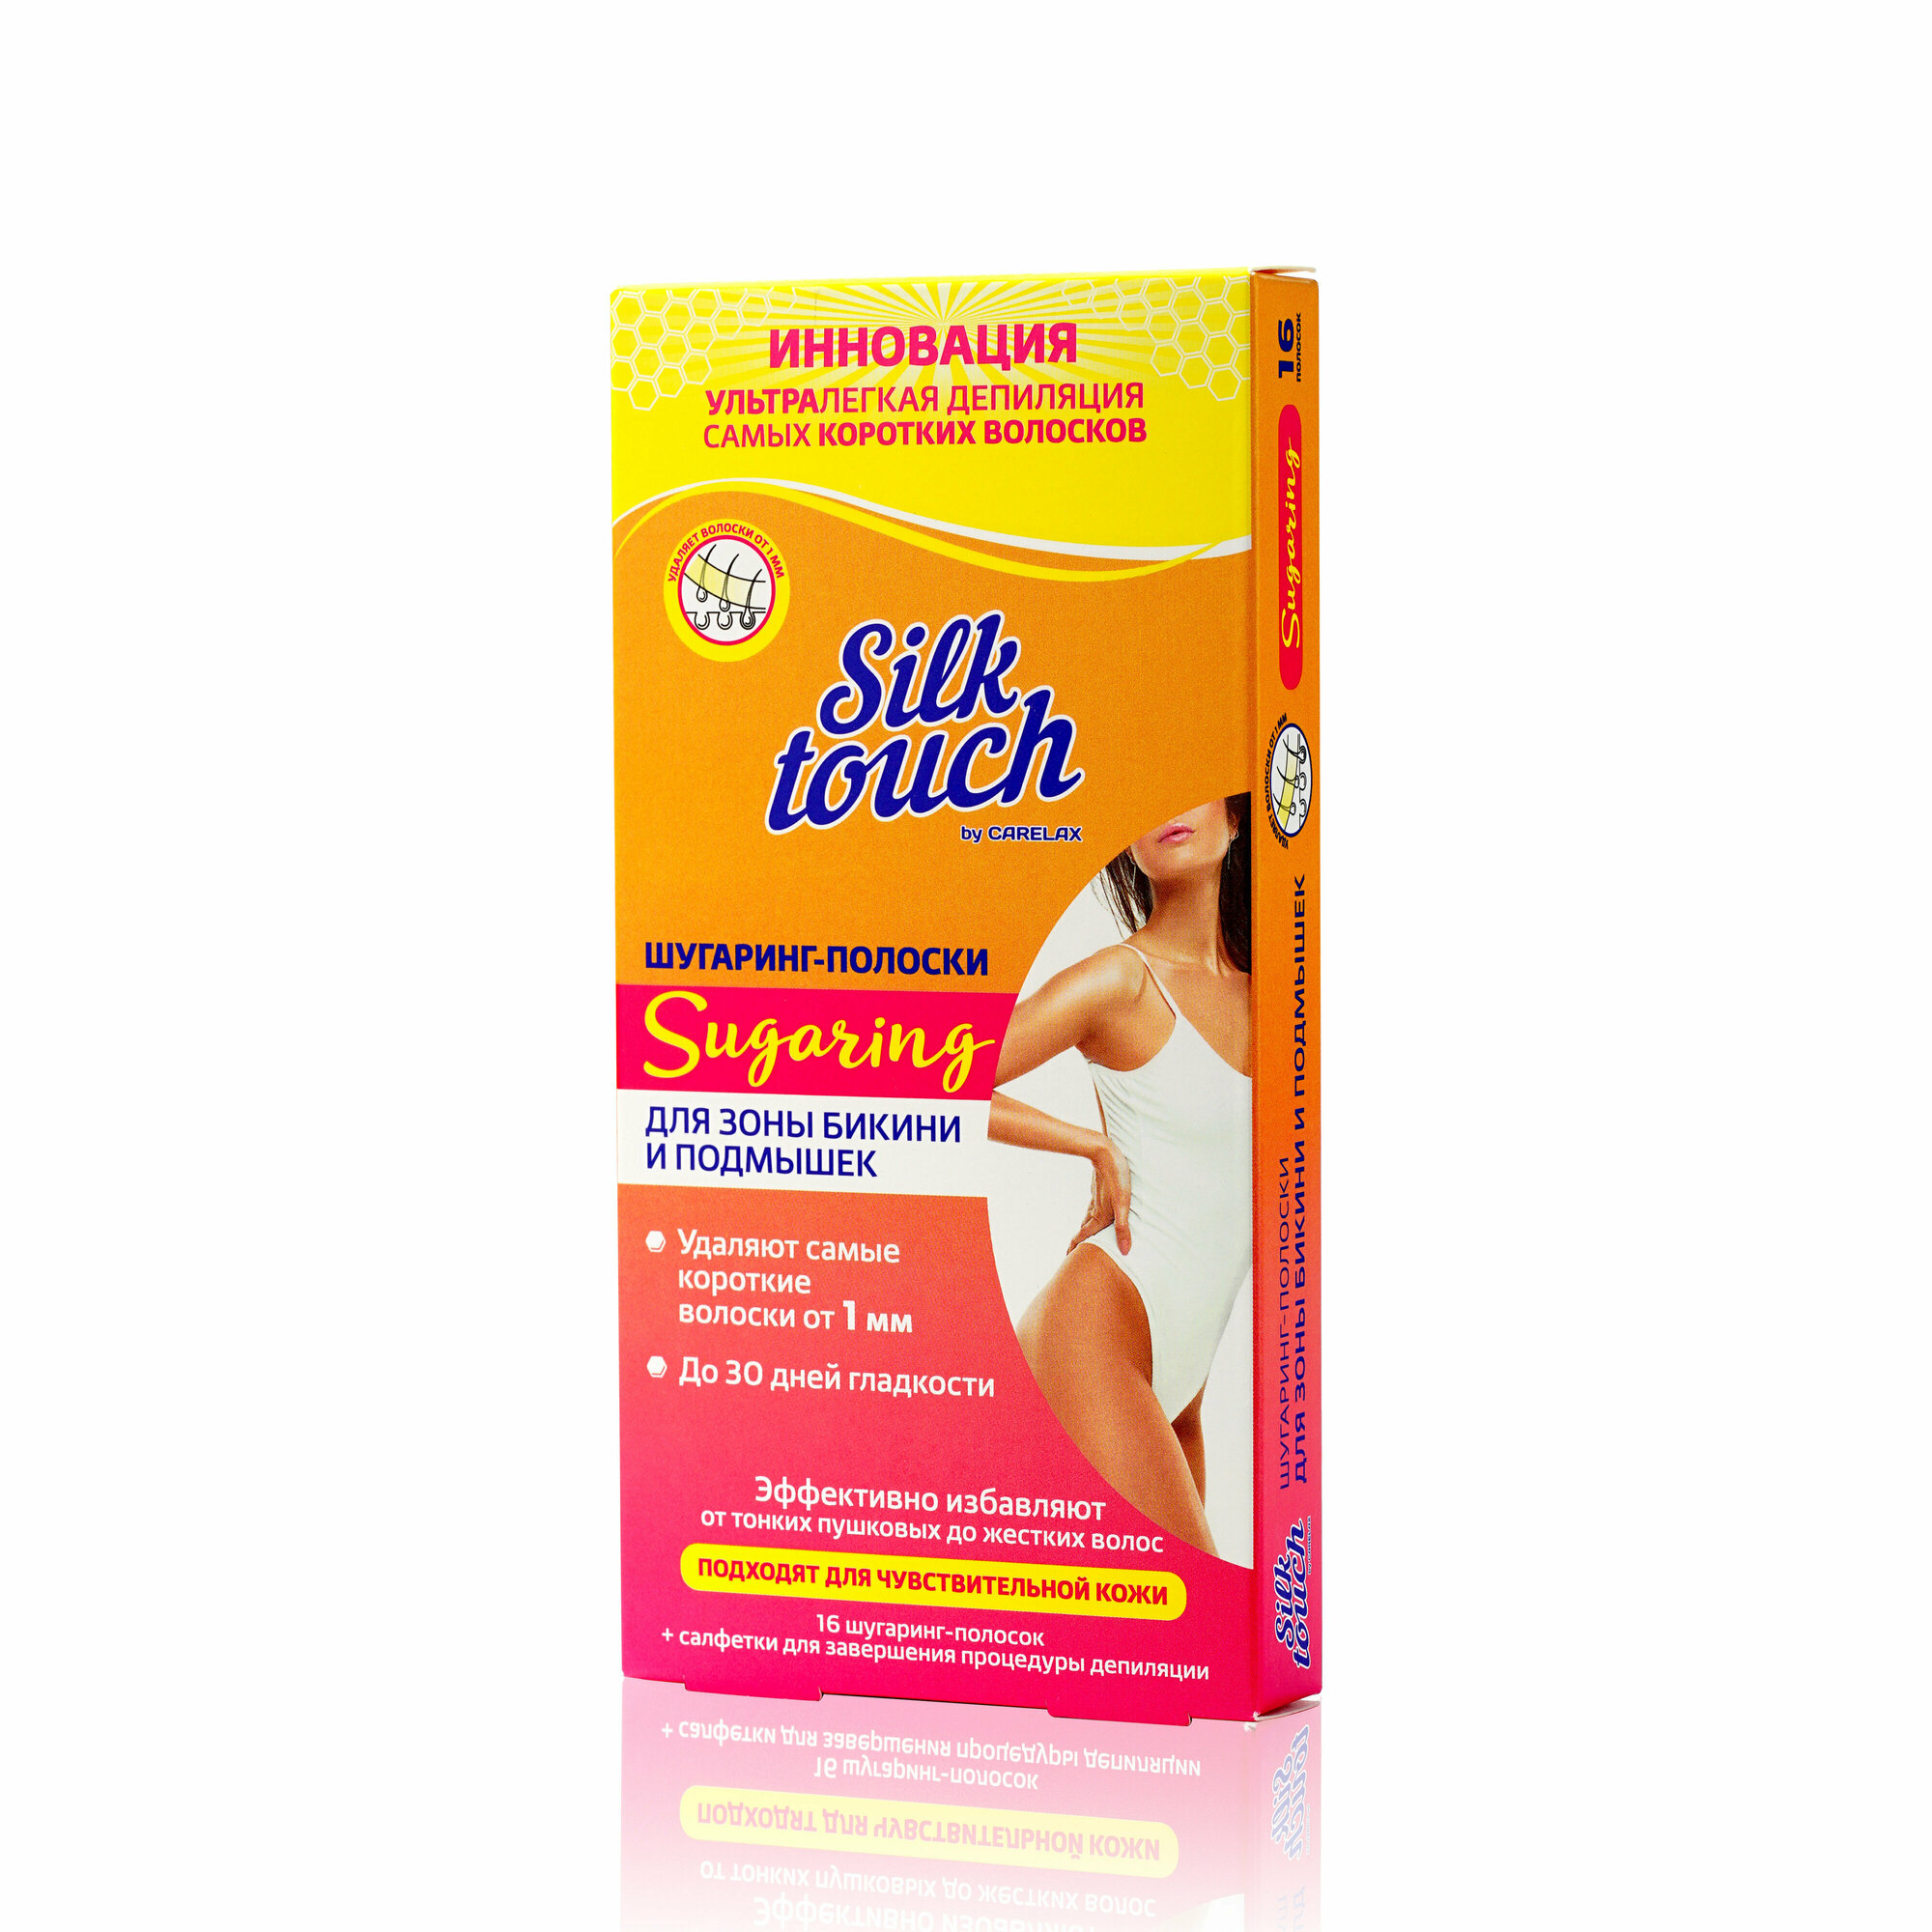 Шугаринг-полоски для депиляции бикини и подмышек Carelax Silk Touch 3127413, 16шт